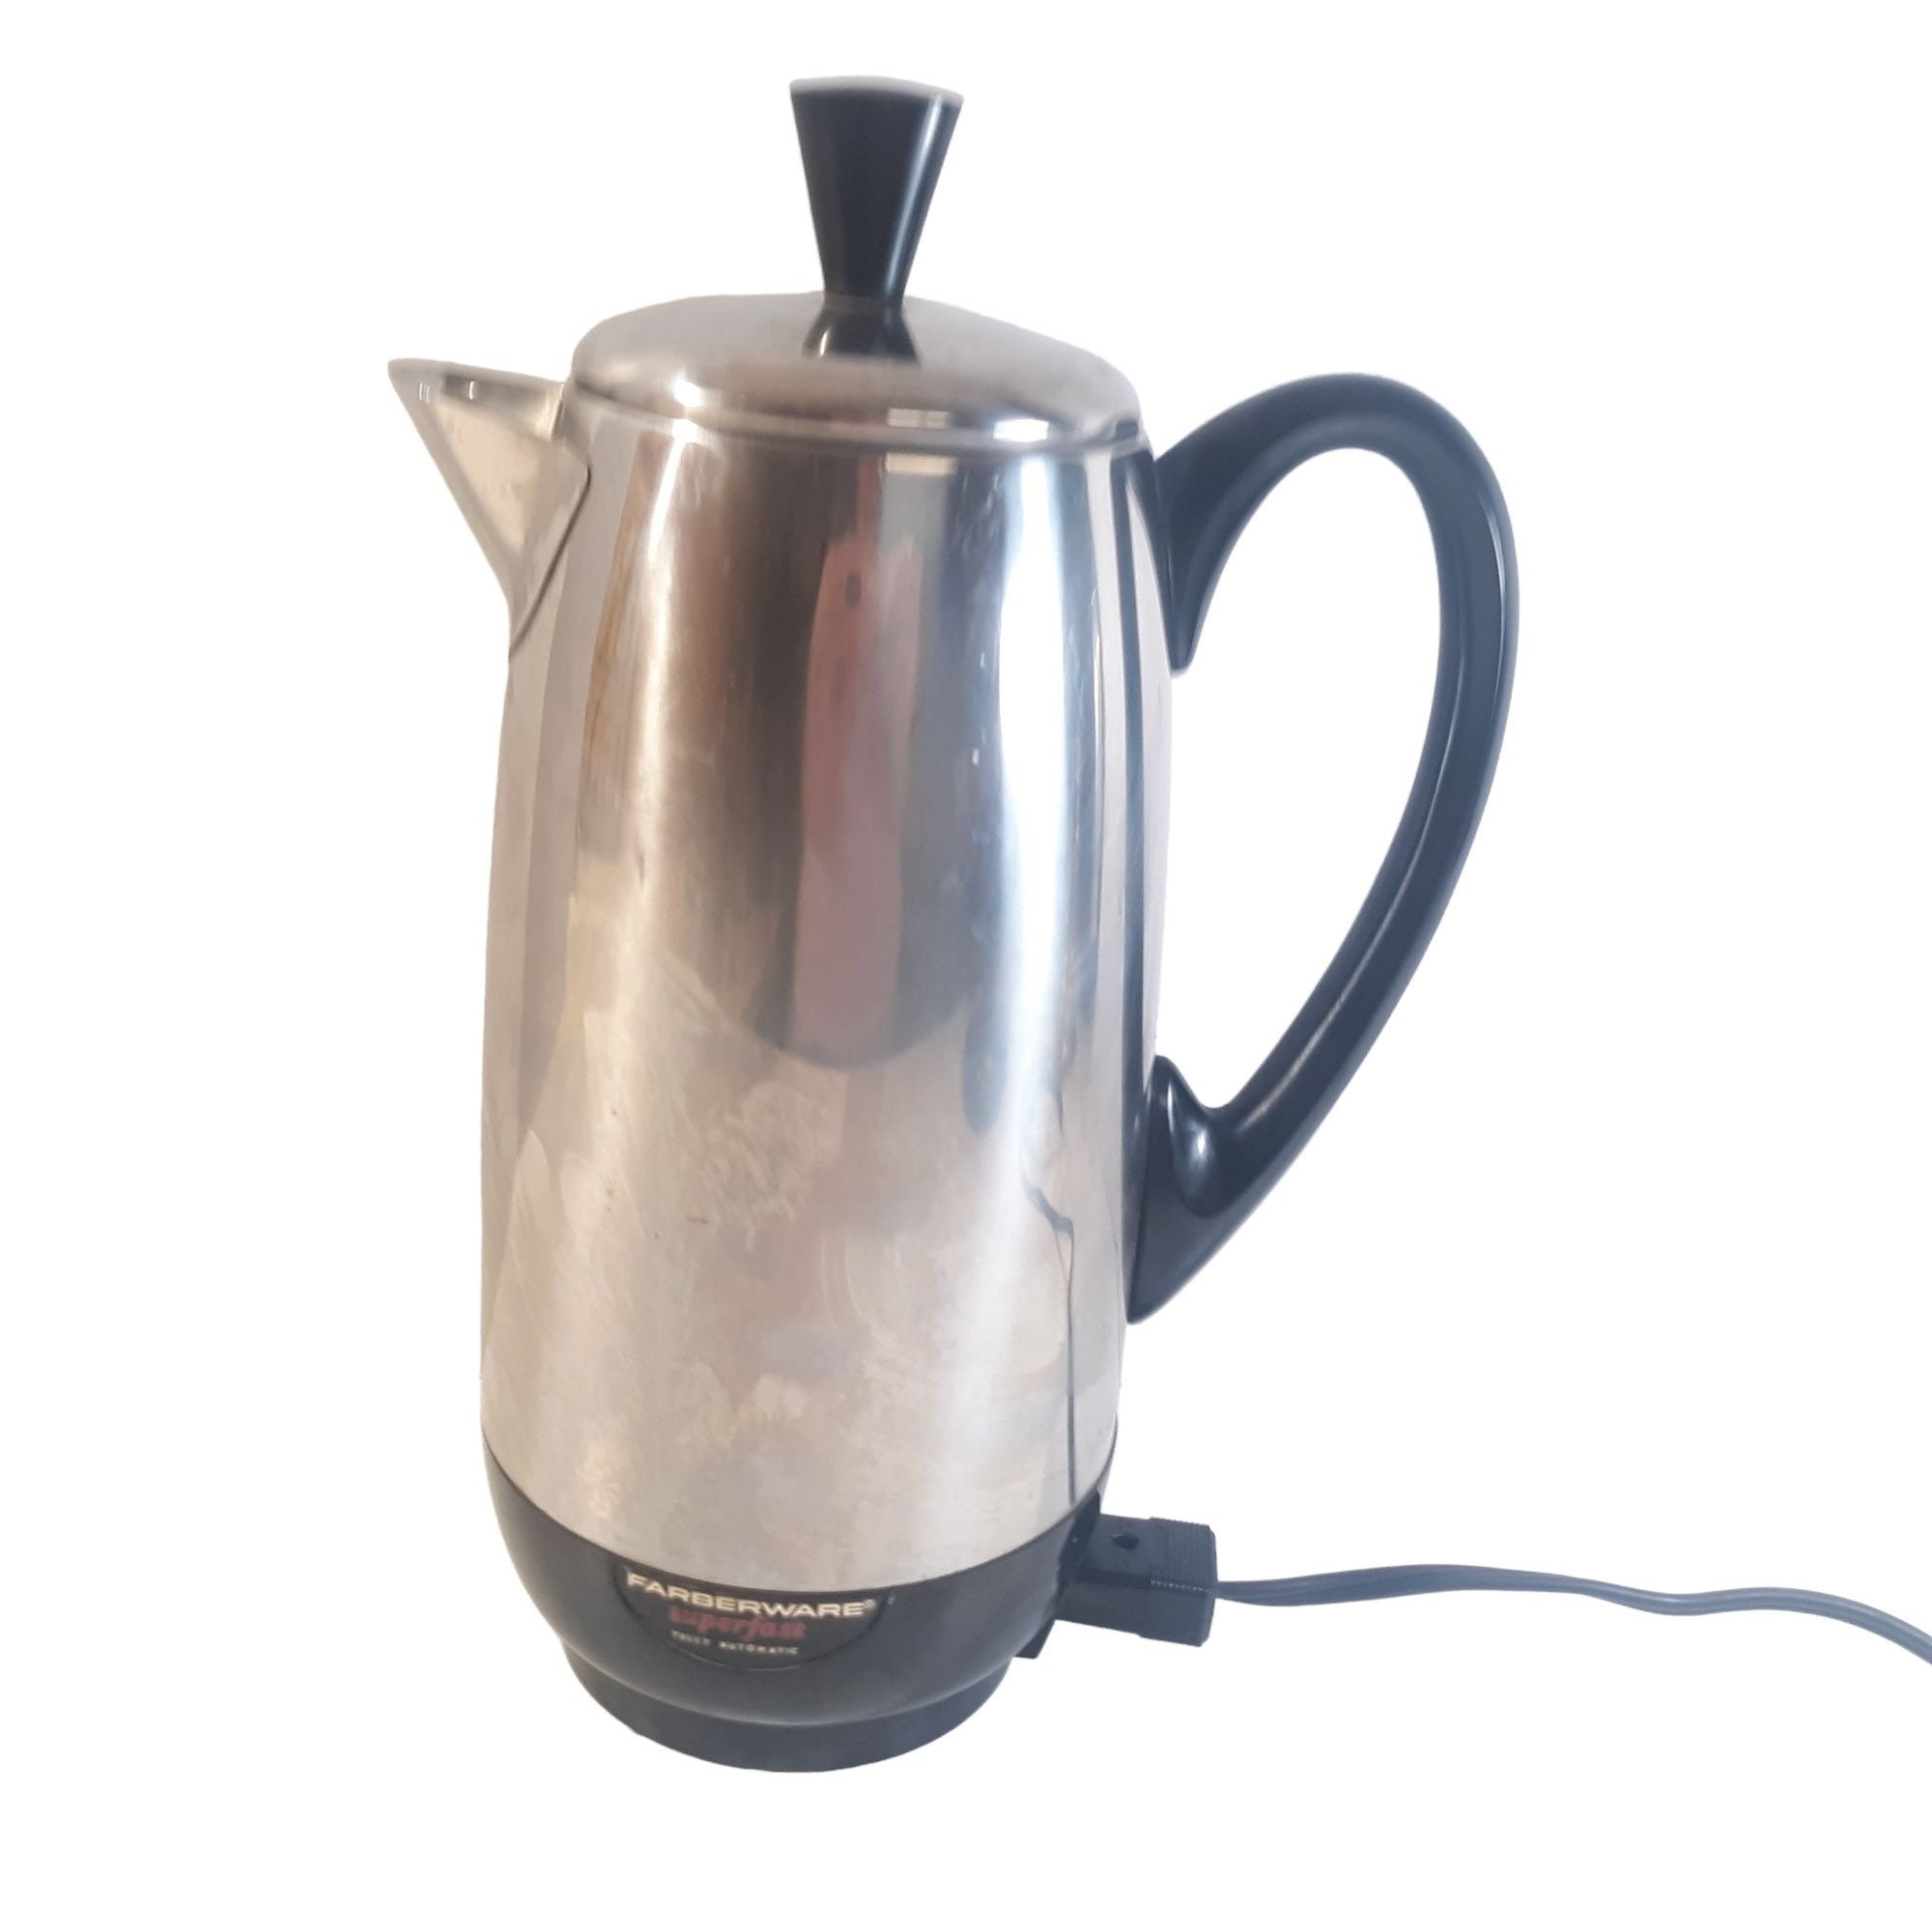 Vtg Farberware SUPER FAST 2-8 Cup Electric Percolator Coffee Maker Model 138